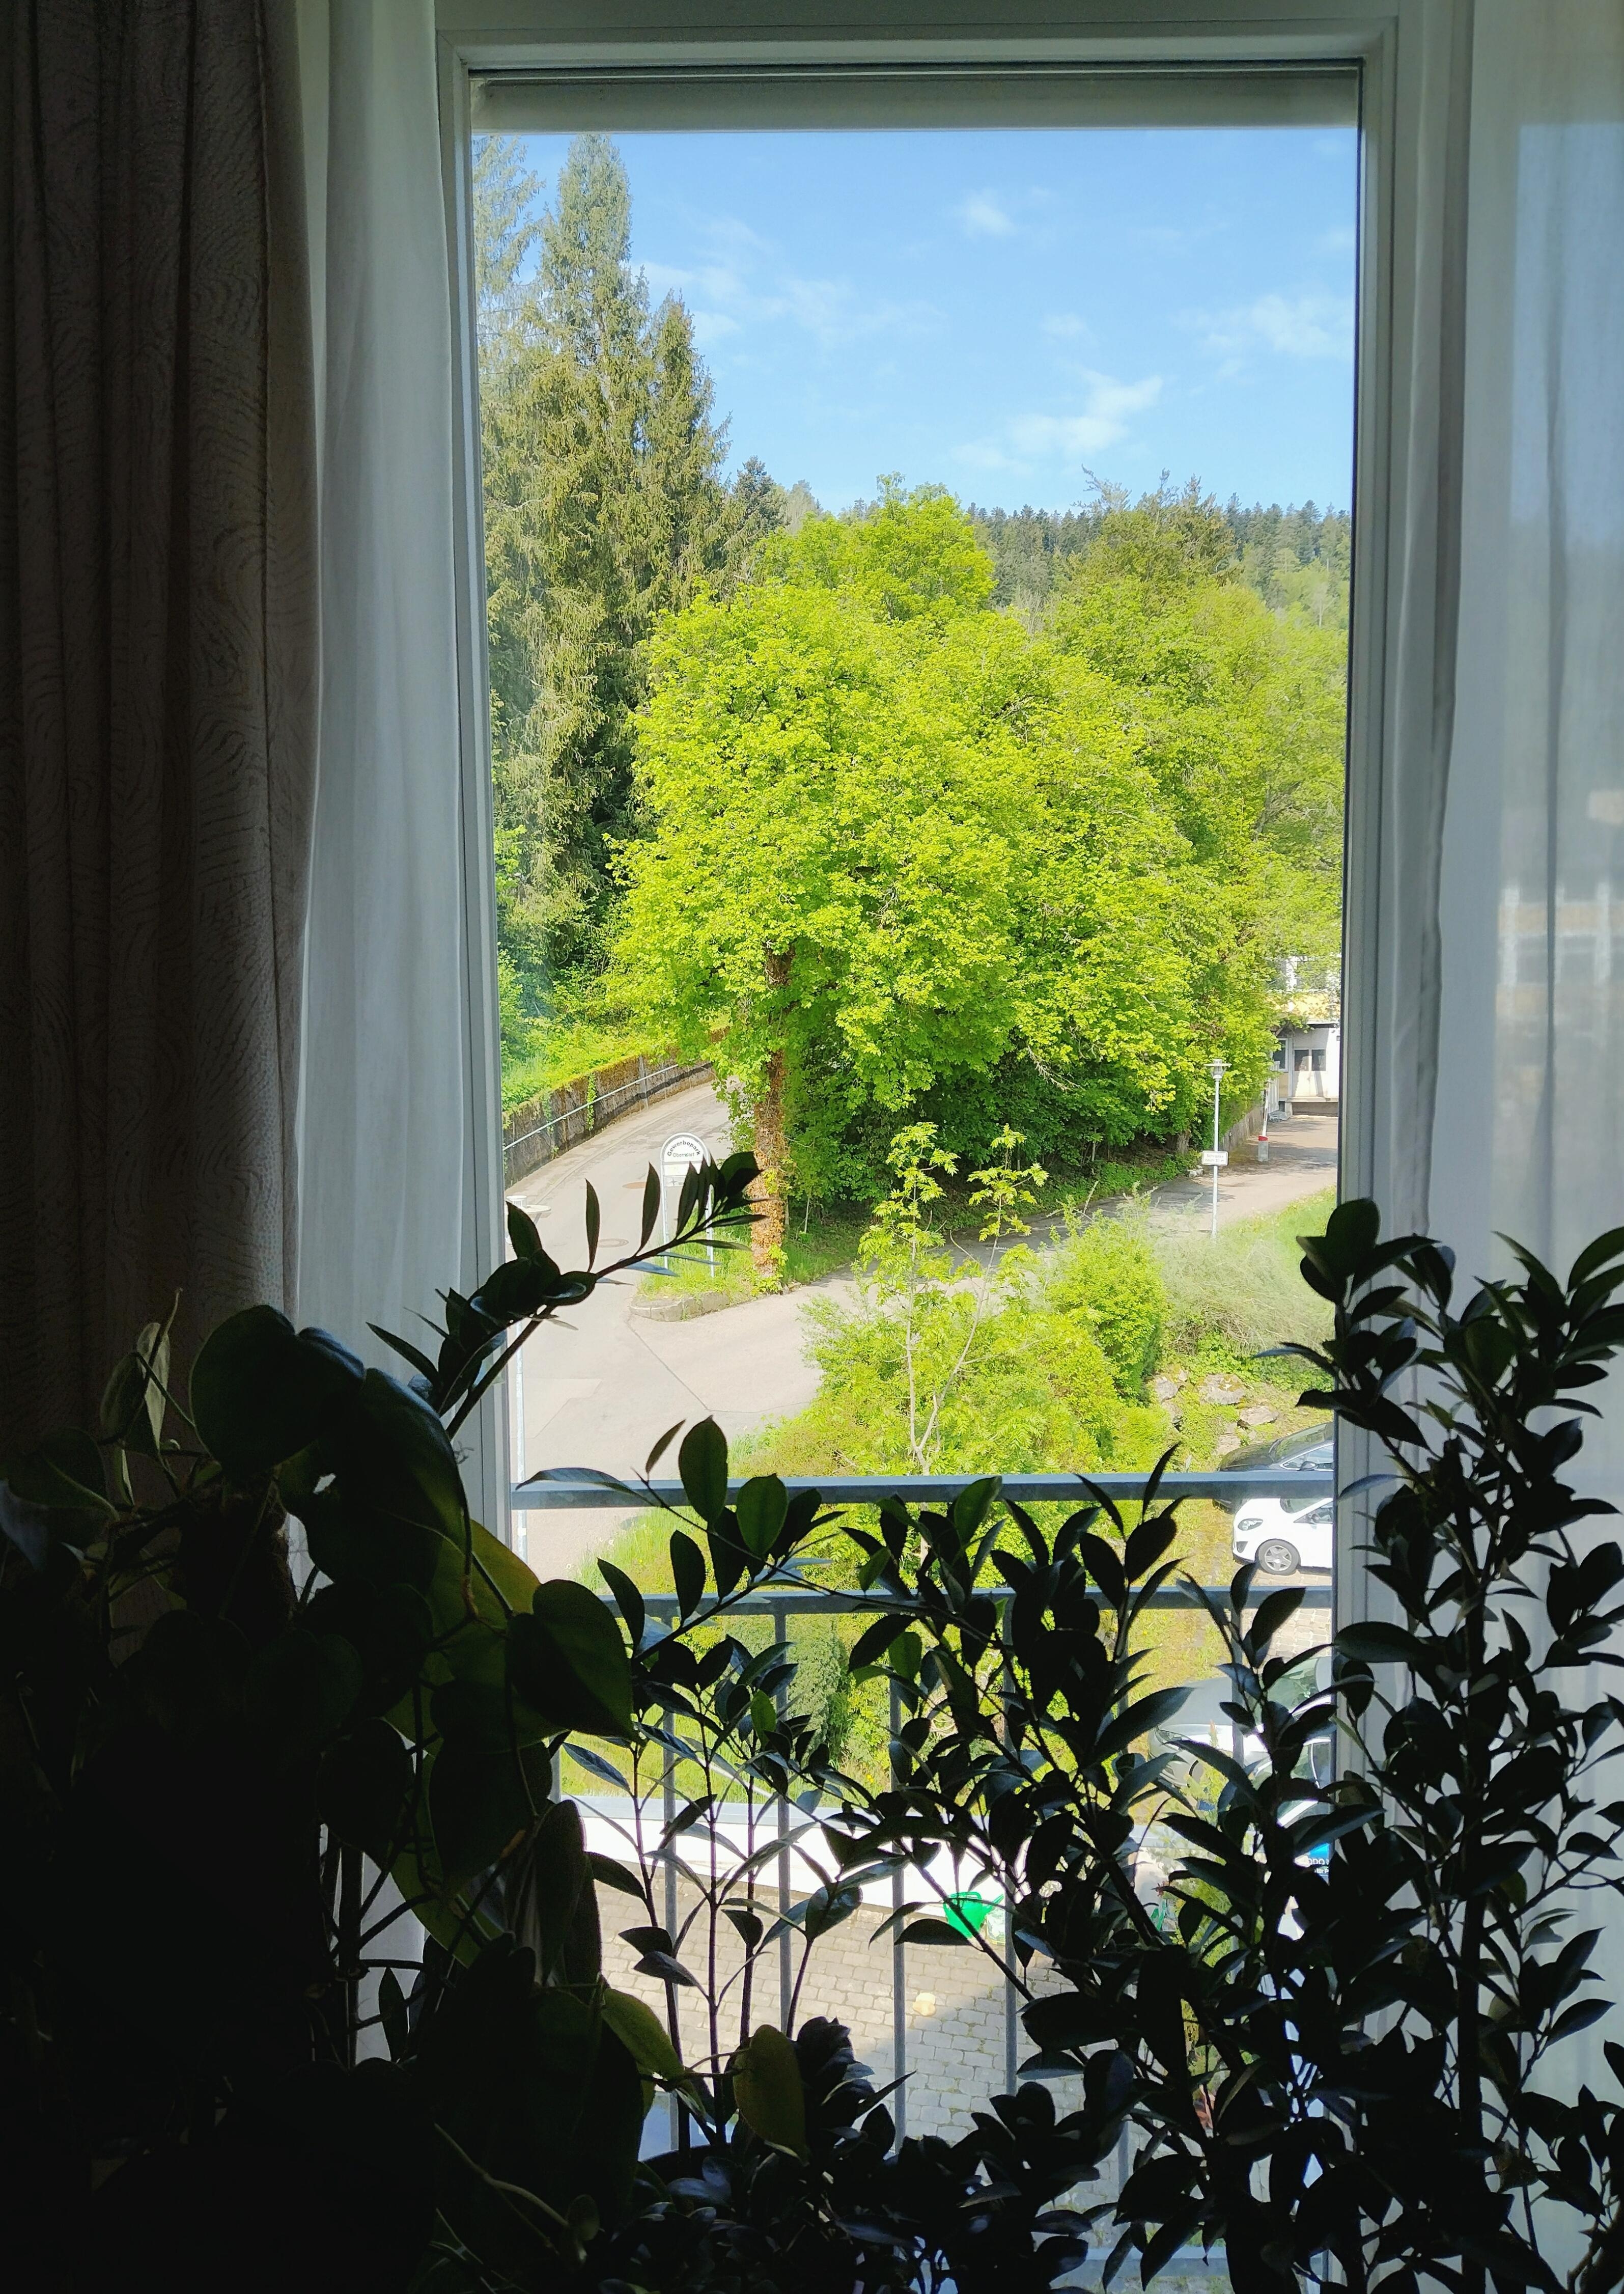 Ausblick Wohnzimmer 💚🌿 #ausblick #pflanzen #pflanzenliebe #wohnzimmerfenster #französischesfenster #grün #details